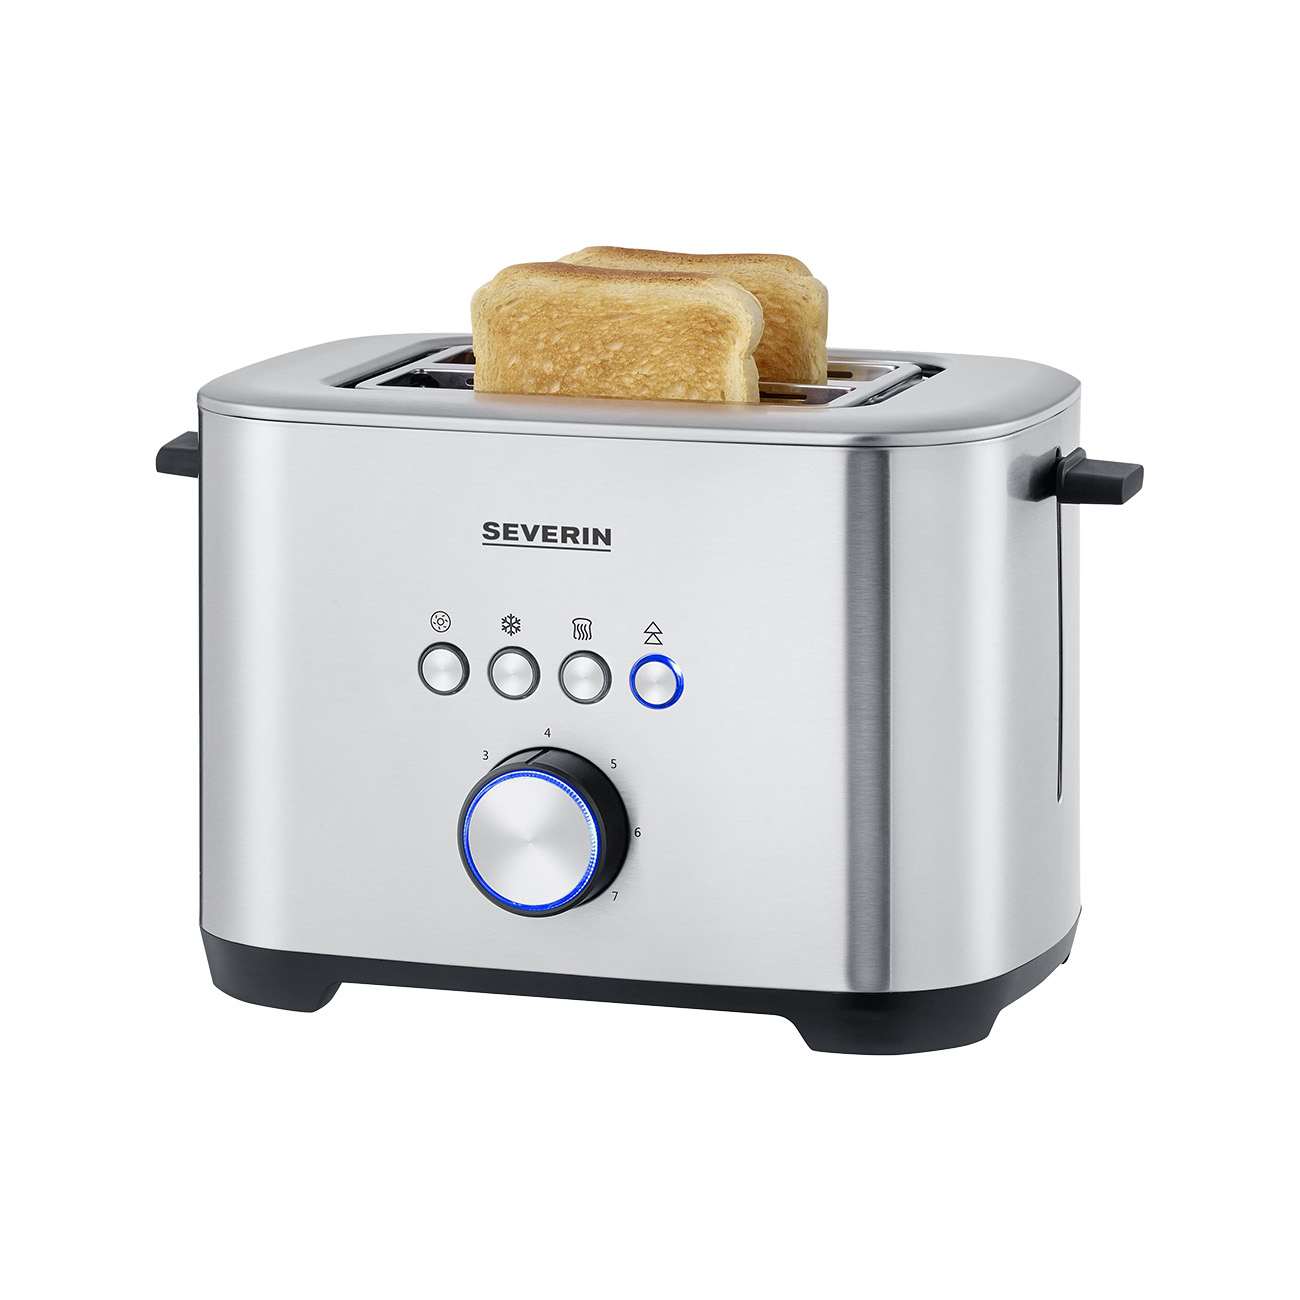 (800 2) Schlitze: AT 2510 Watt, silber SEVERIN Toaster